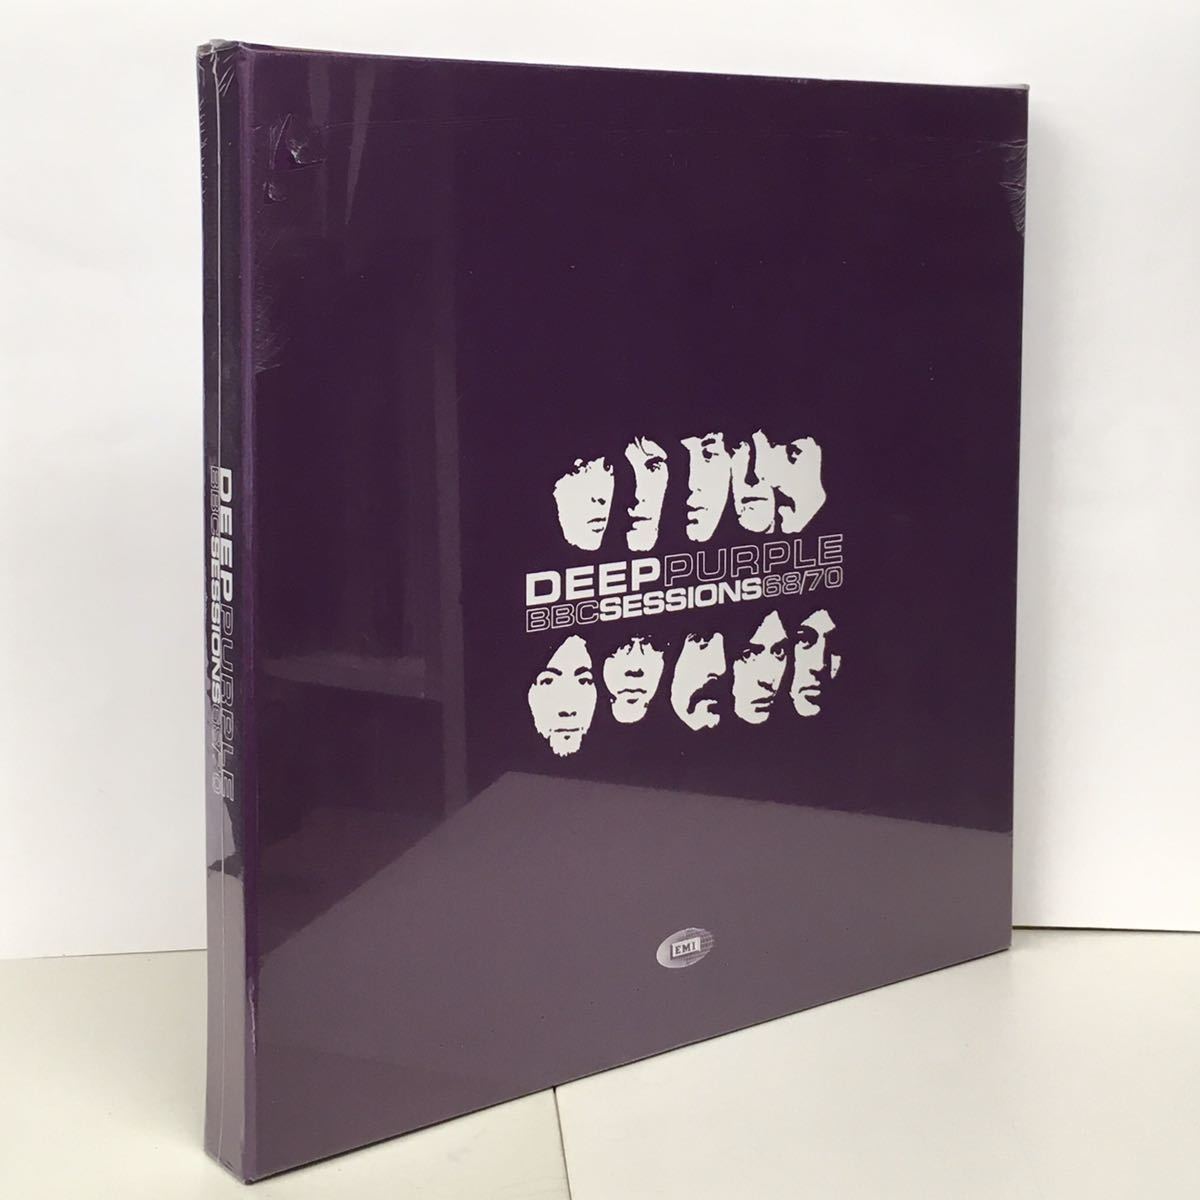 DEEP PURPLE/ BBC SESSIONS 68/70 (LP) EU盤 2-LP & 2-CD BOX SET (